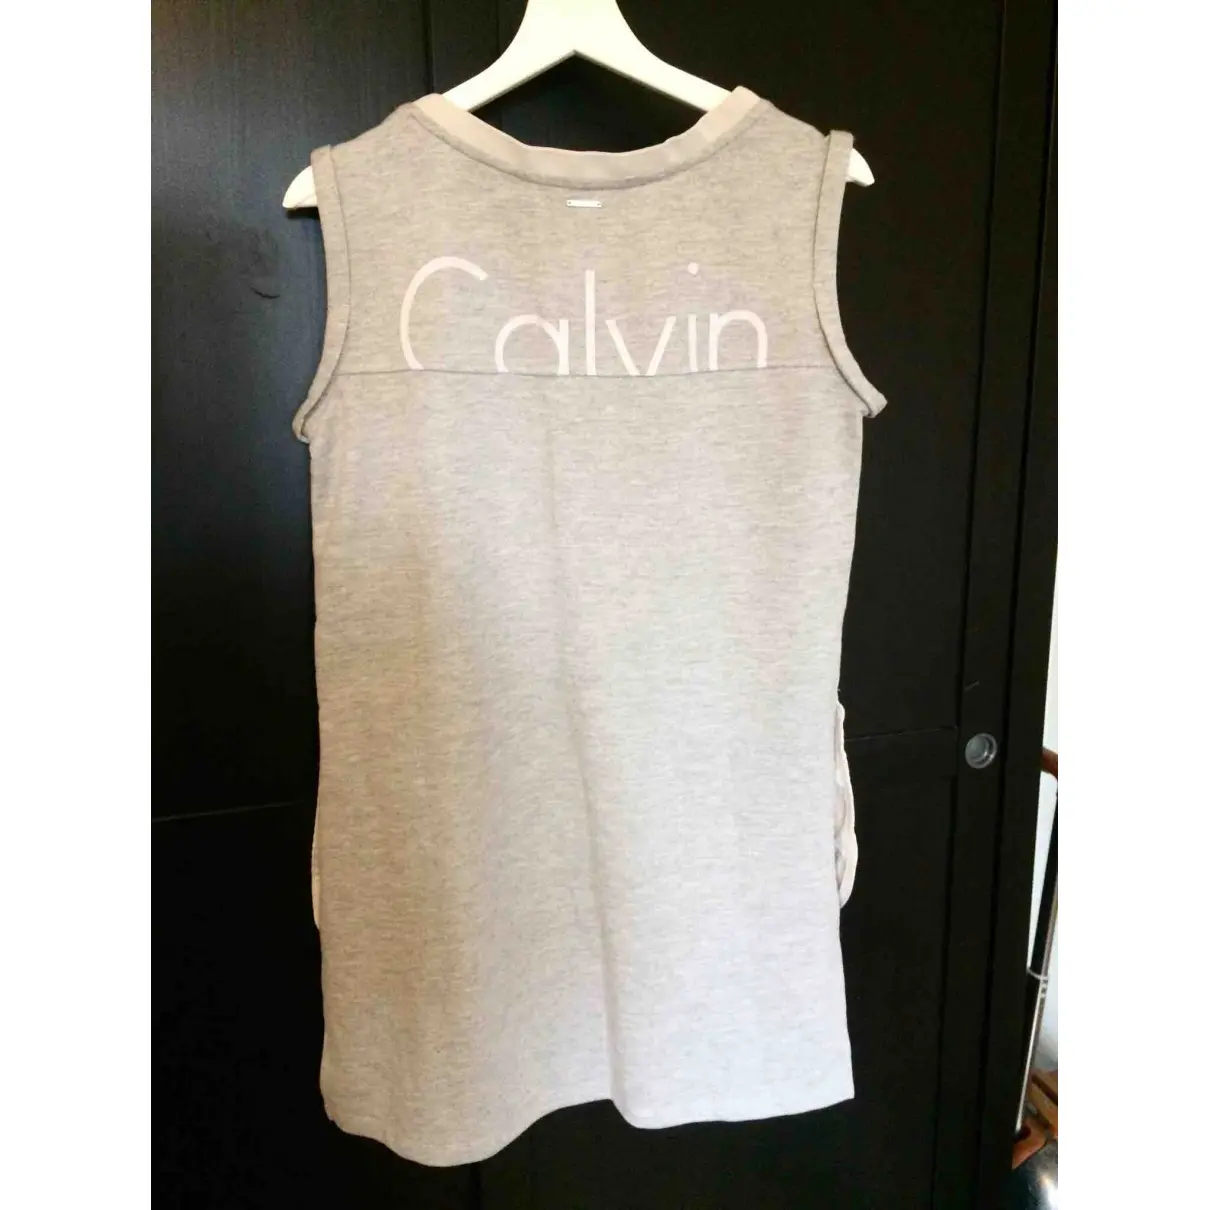 Calvin Klein T-shirt for sale